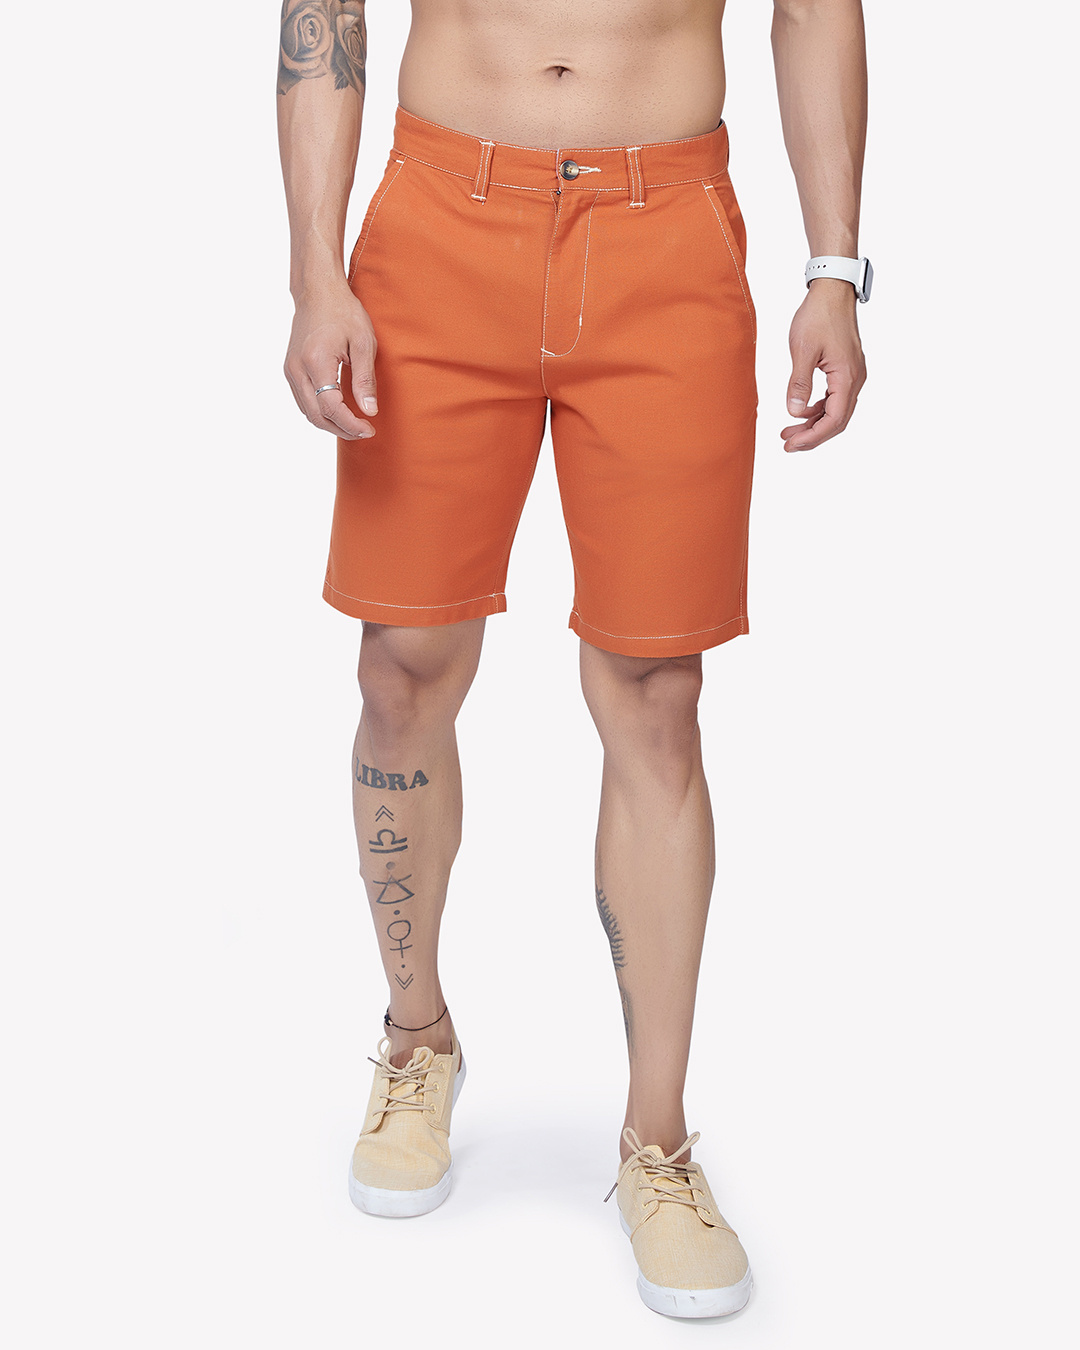 Buy Men's Orange Shorts Online at Bewakoof